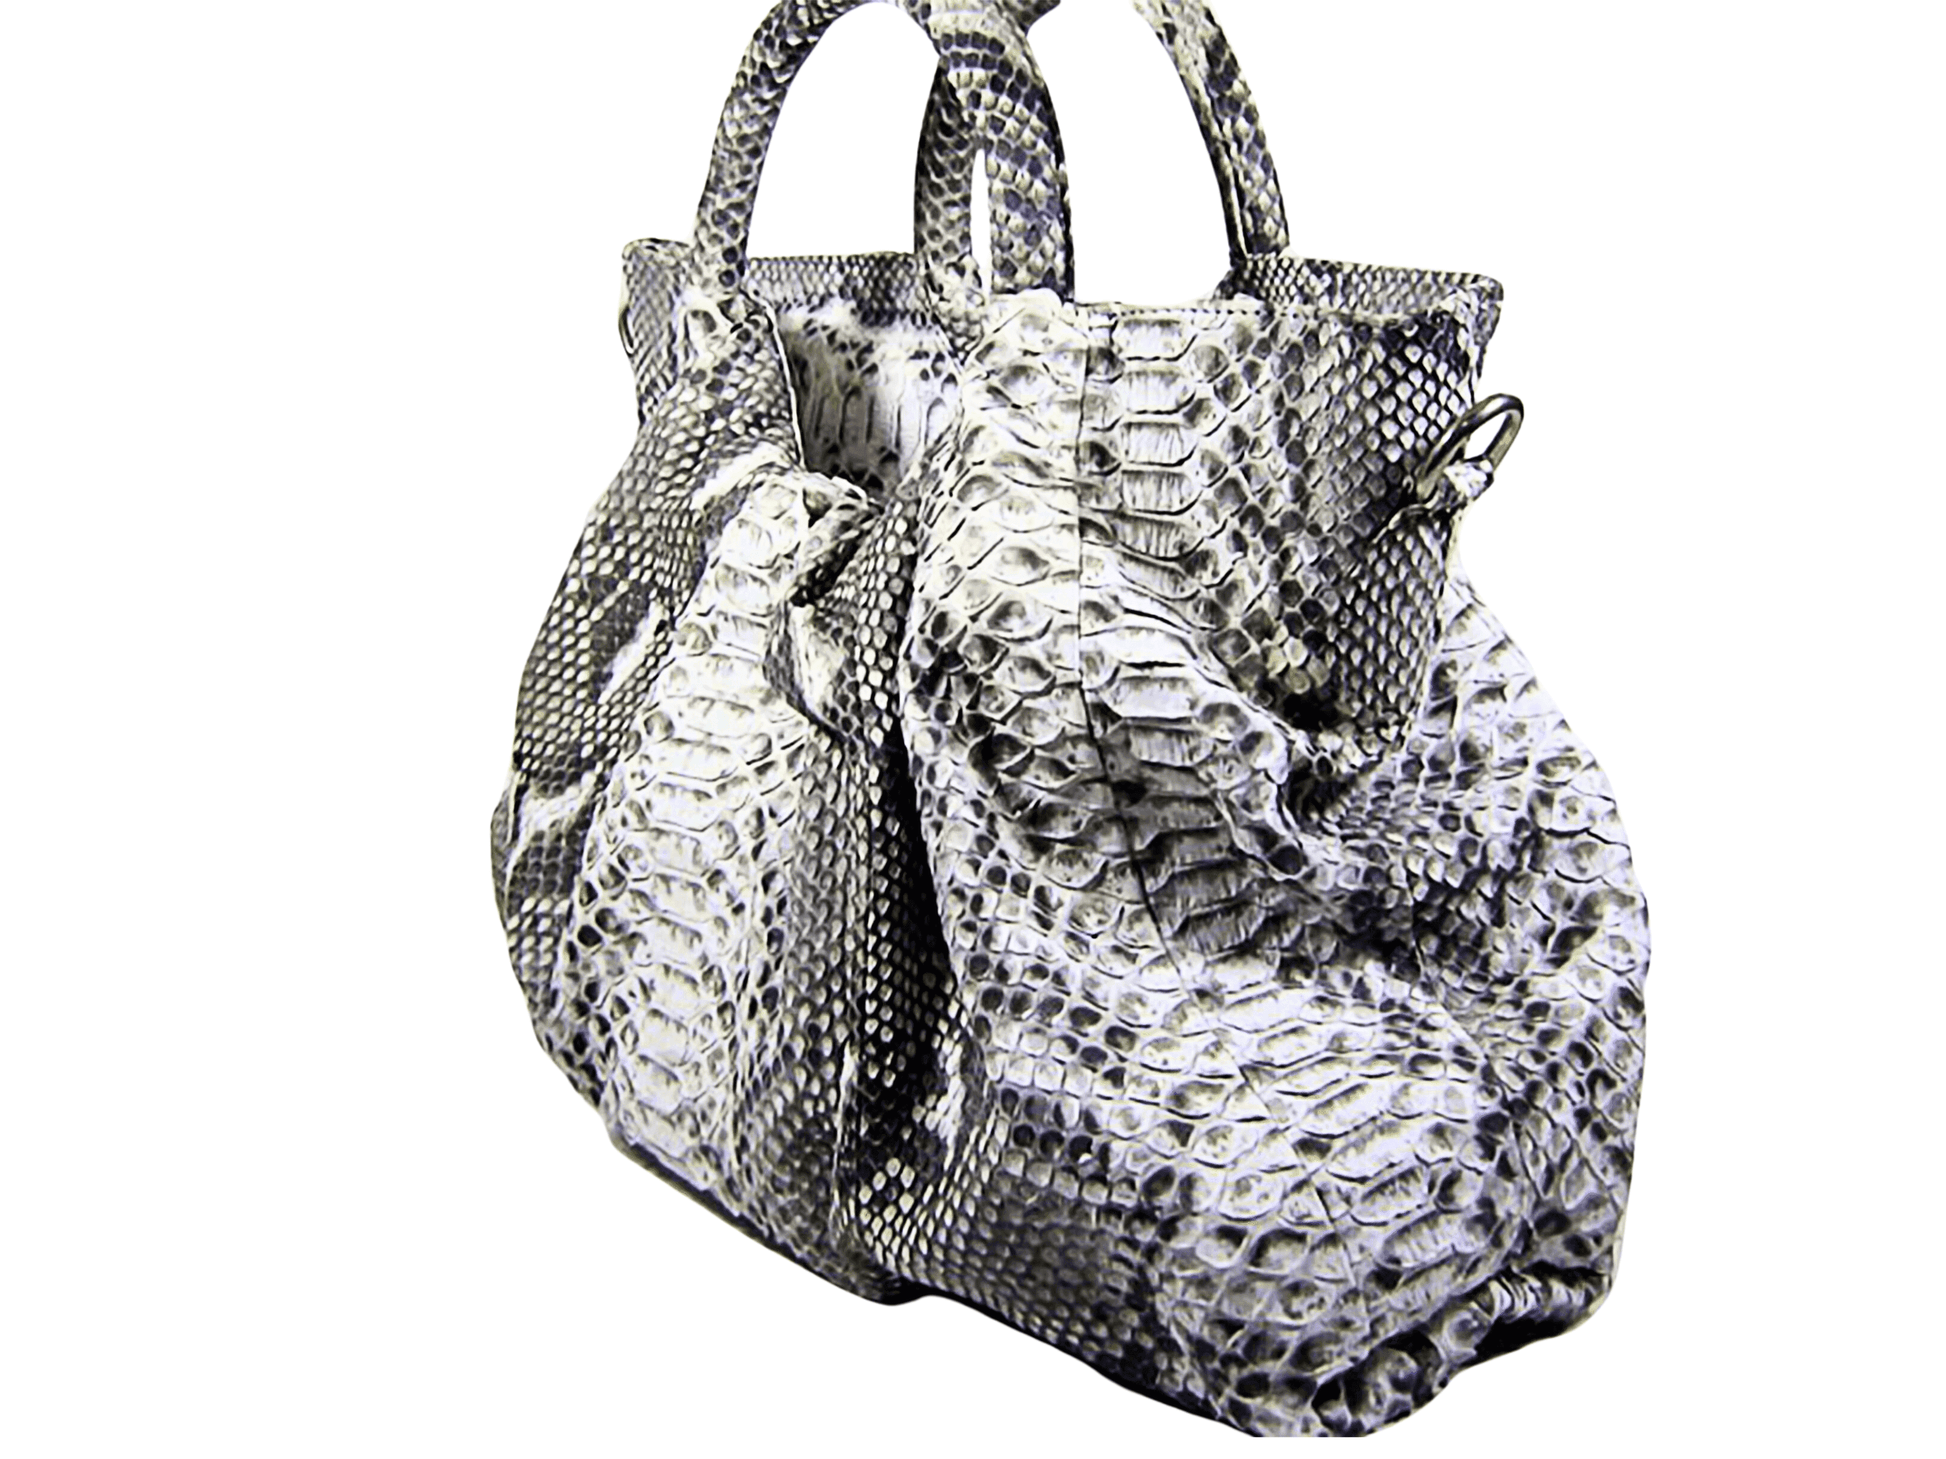 Snakeskin Hobo Floy Handbag Gray Python Jacket by LFM Fashion